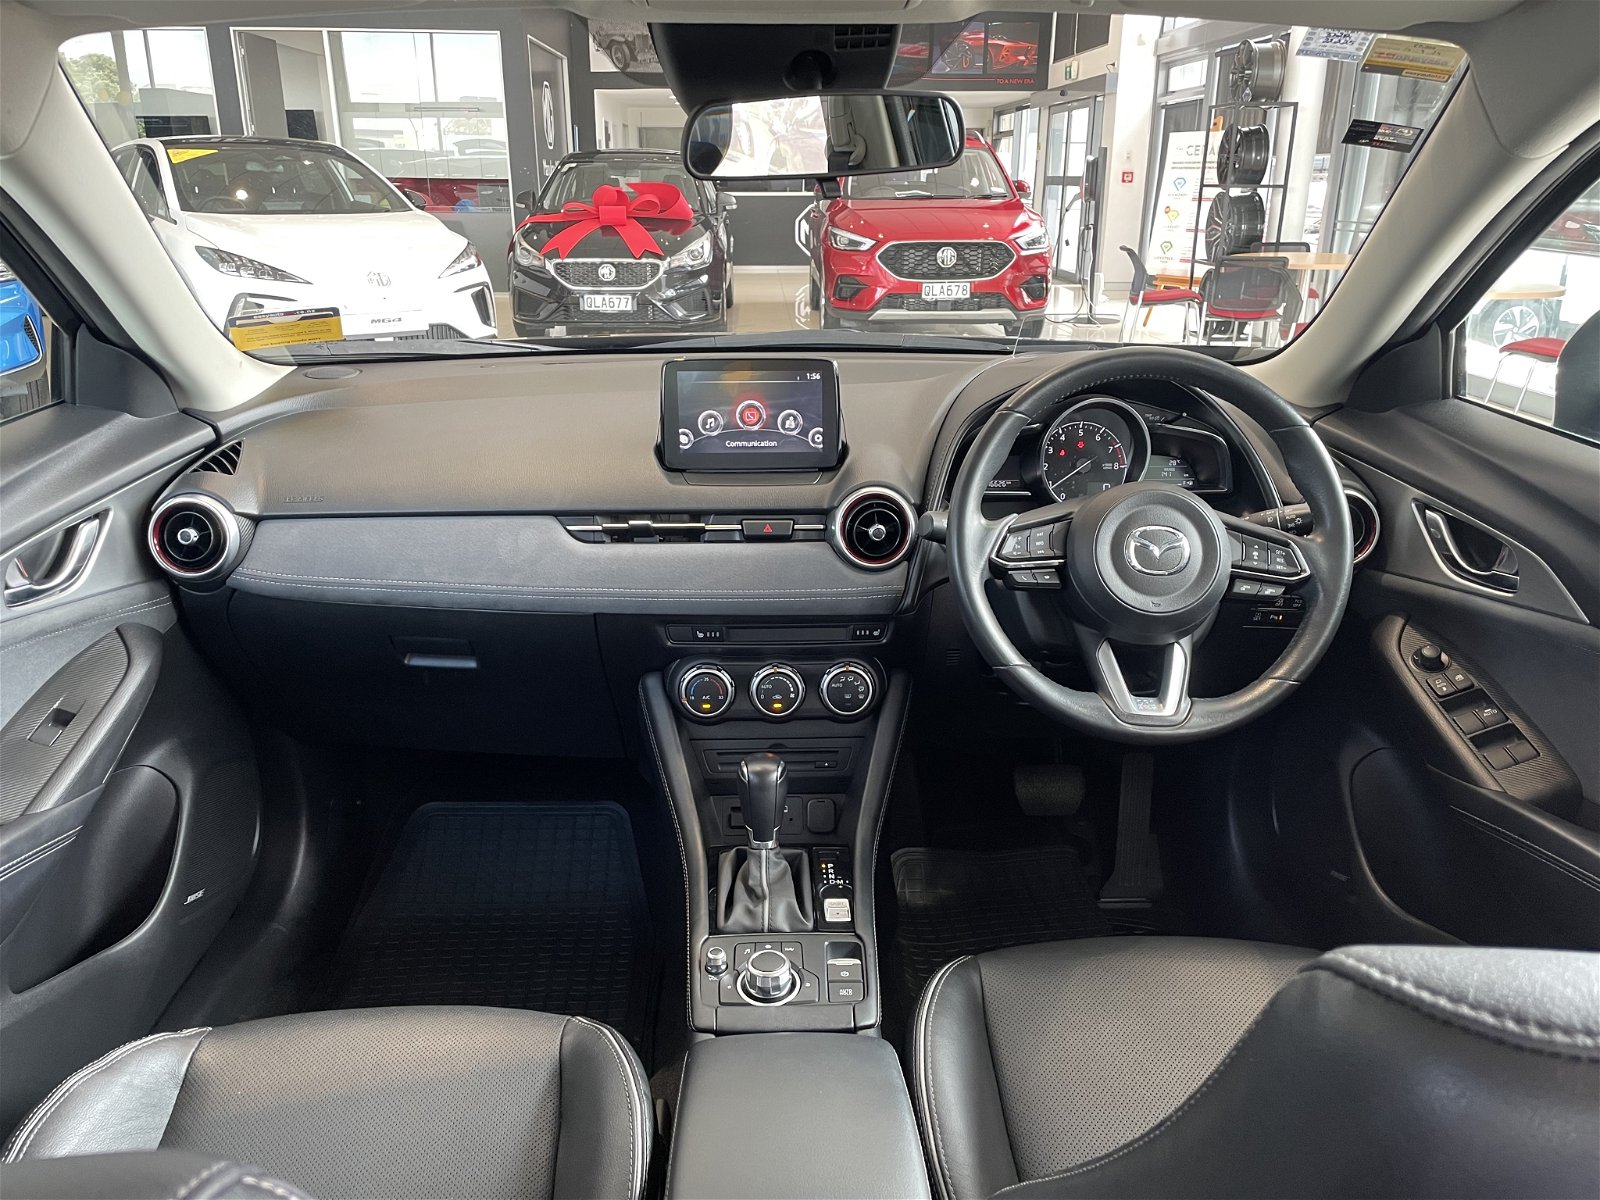 2019 Mazda CX-3 Limited 2.0P/6At